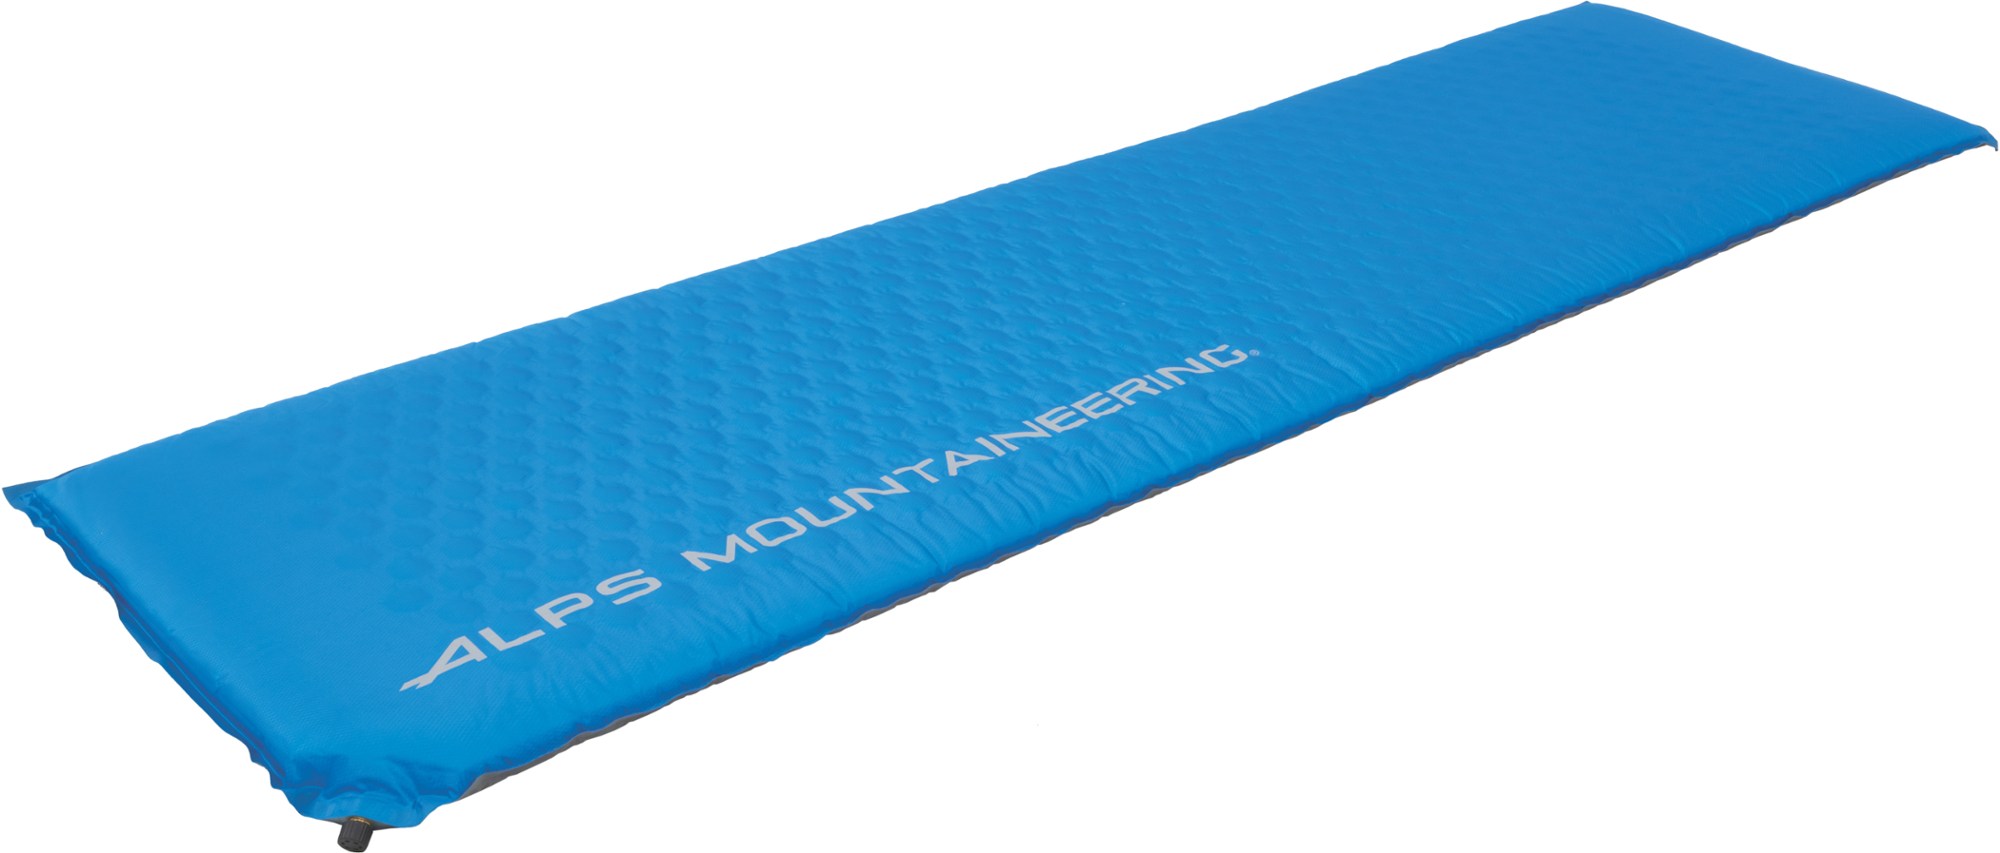 flexcore air pad длинный alps mountaineering синий Flexcore Air Pad — длинный ALPS Mountaineering, синий